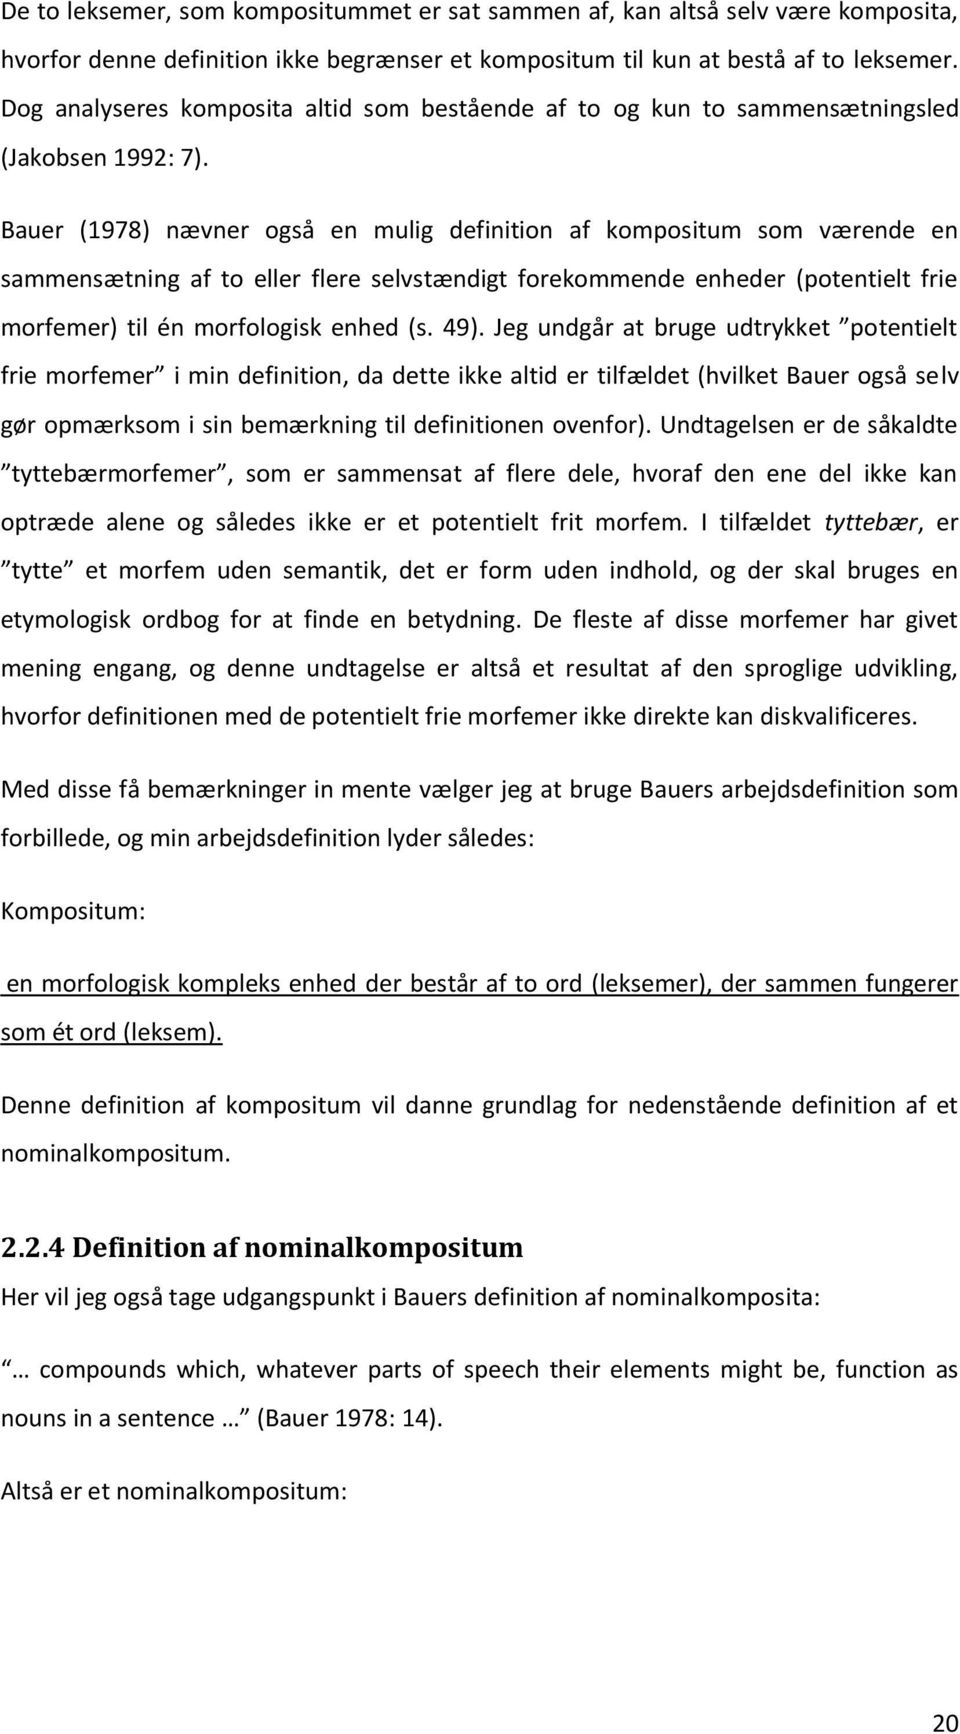 Bauer (1978) nævner også en mulig definition af kompositum som værende en sammensætning af to eller flere selvstændigt forekommende enheder (potentielt frie morfemer) til én morfologisk enhed (s. 49).